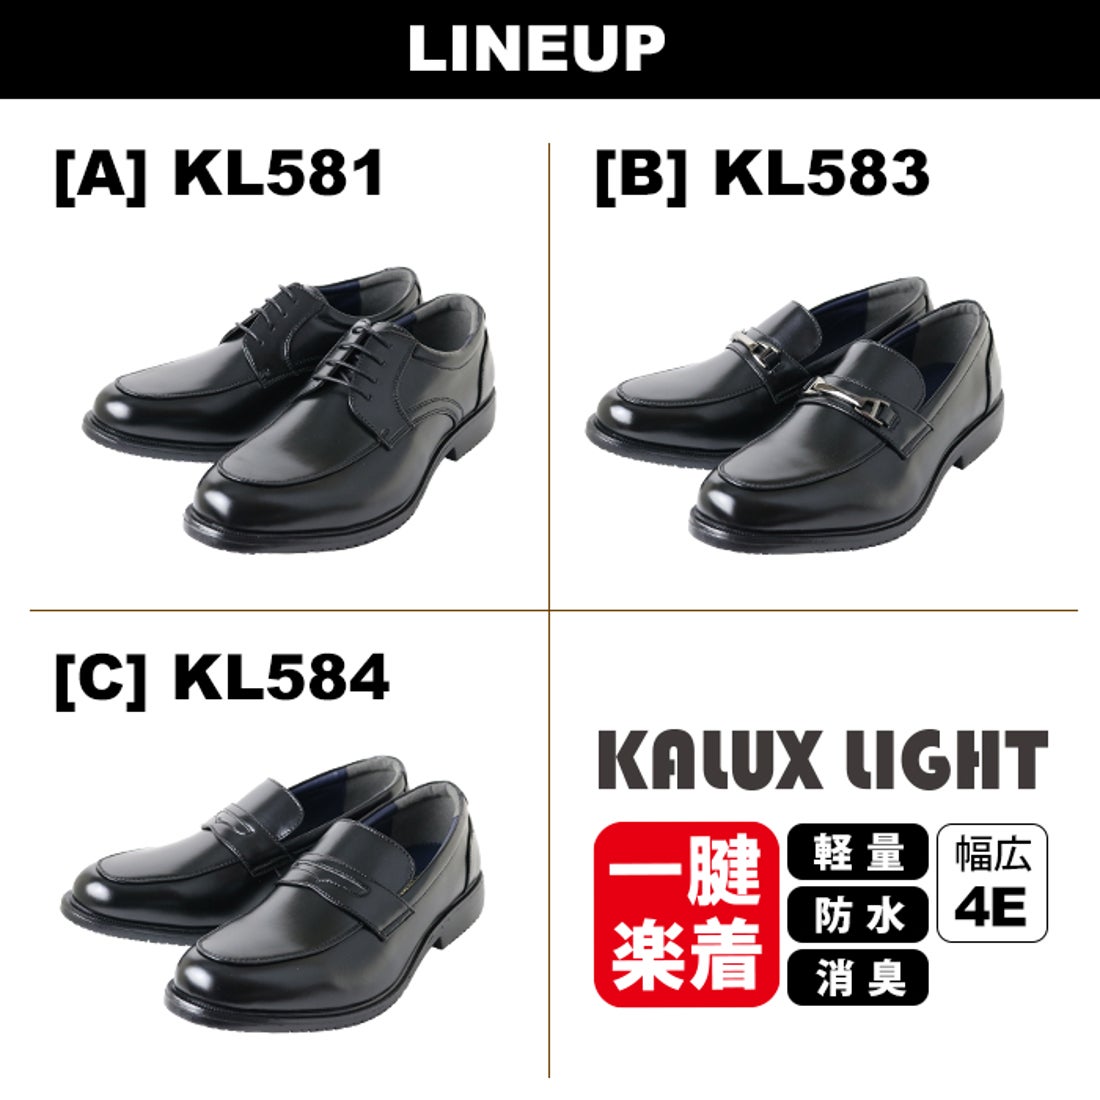 1197円 ブランド品 ビジネスシューズ メンズ 革靴 黒 ブラック 軽量 軽い 幅広 4E 防水 防臭 KALUX LIGHT KL581 KL583 KL584